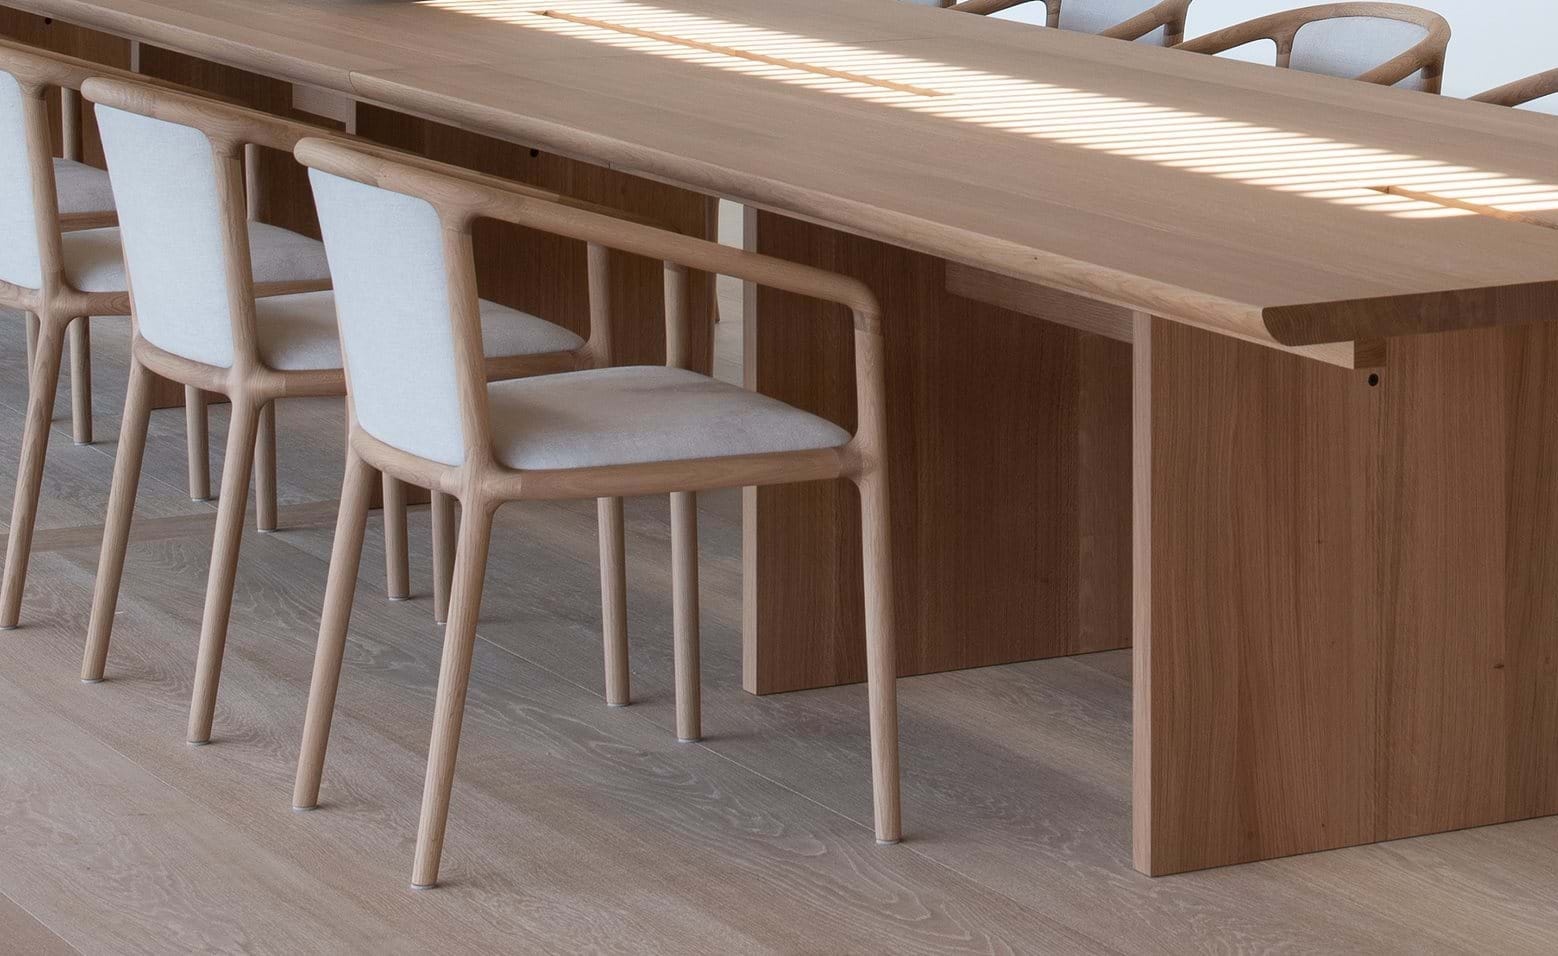 Японский бренд Karimoku и бюро Foster + Partners представили коллекцию мебели